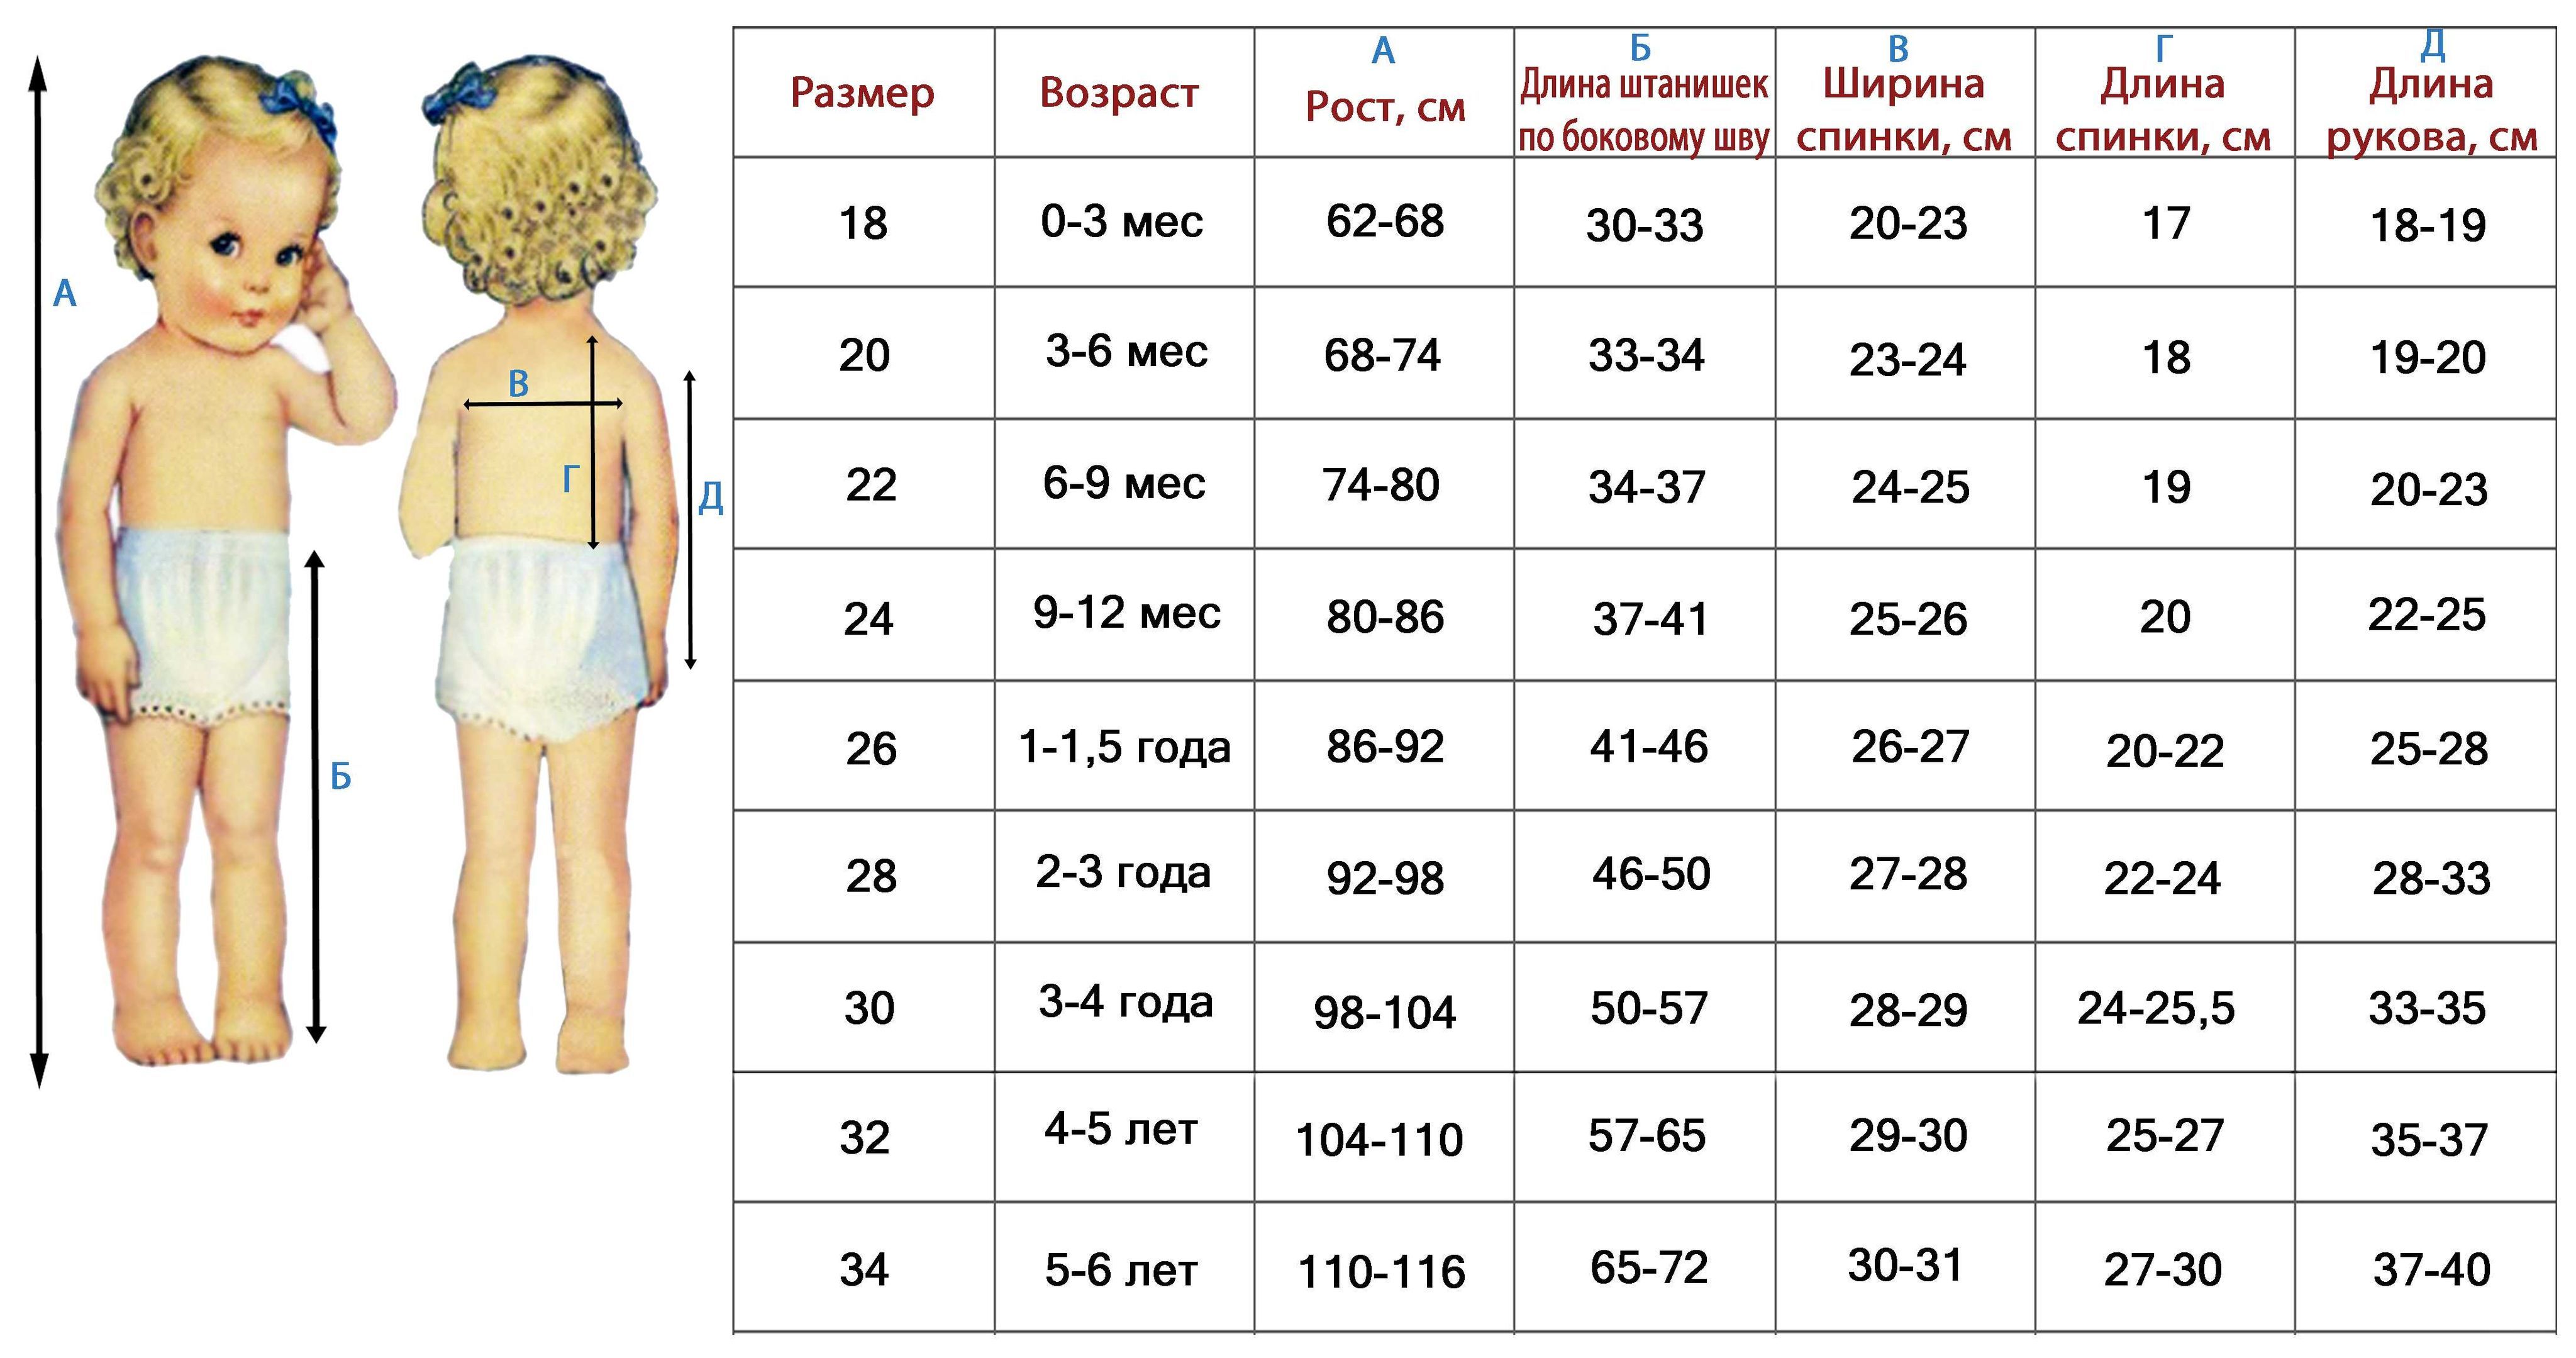 Как правильно подобрать размер ребенка. Размер одежды таблица для детей таблица. Таблица размеров одежды для детей от 1 года до 5 лет. Размеры одежды таблицы для детей 2 года. Таблица размеров детской одежды по возрасту с года.